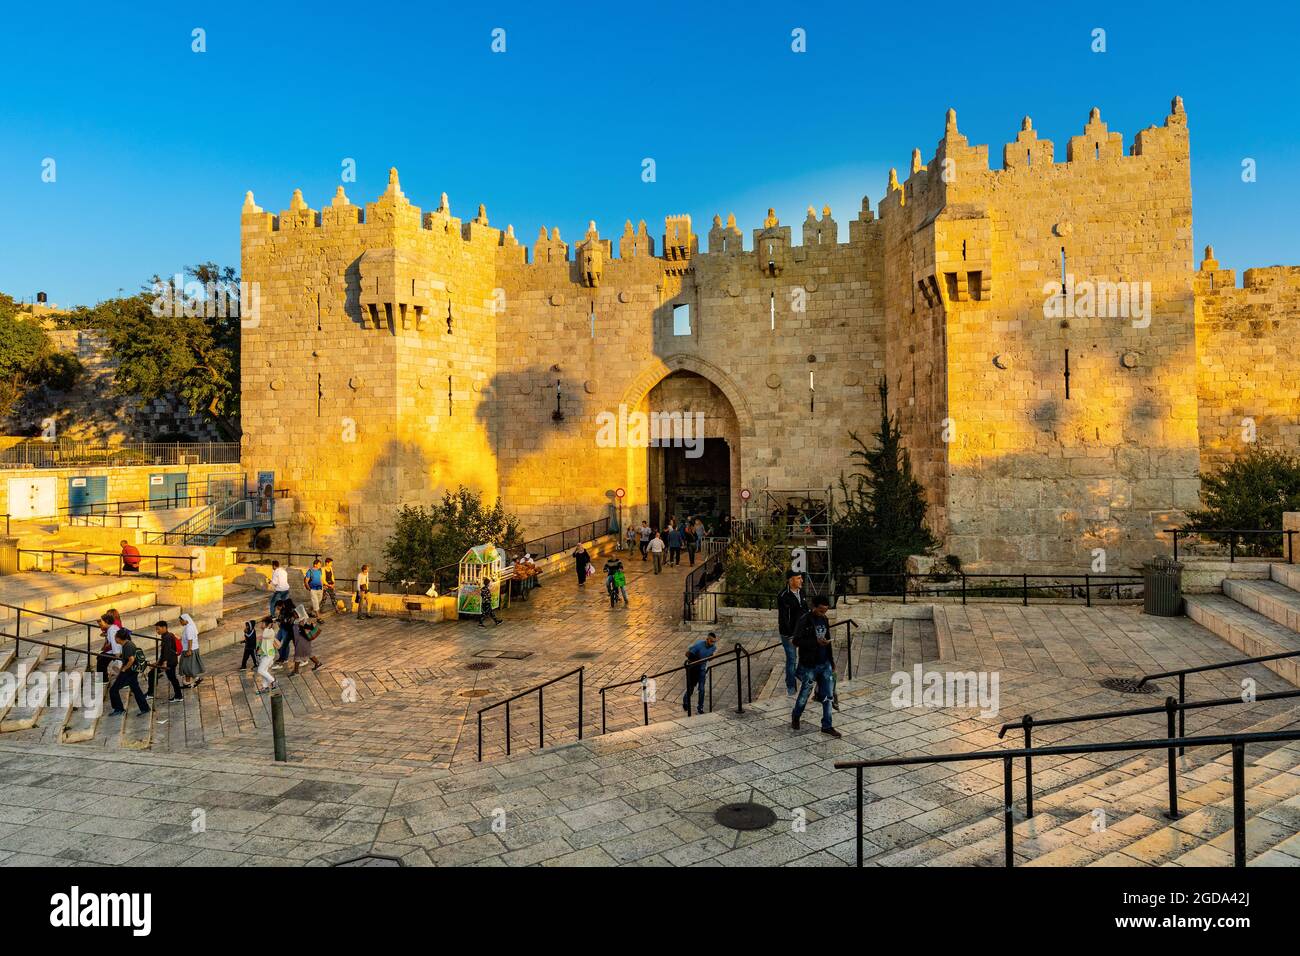 Gerusalemme, Israele - 13 ottobre 2017: Damasco porta delle antiche mura della città vecchia che conduce al mercato bazar del quartiere musulmano di Gerusalemme Foto Stock